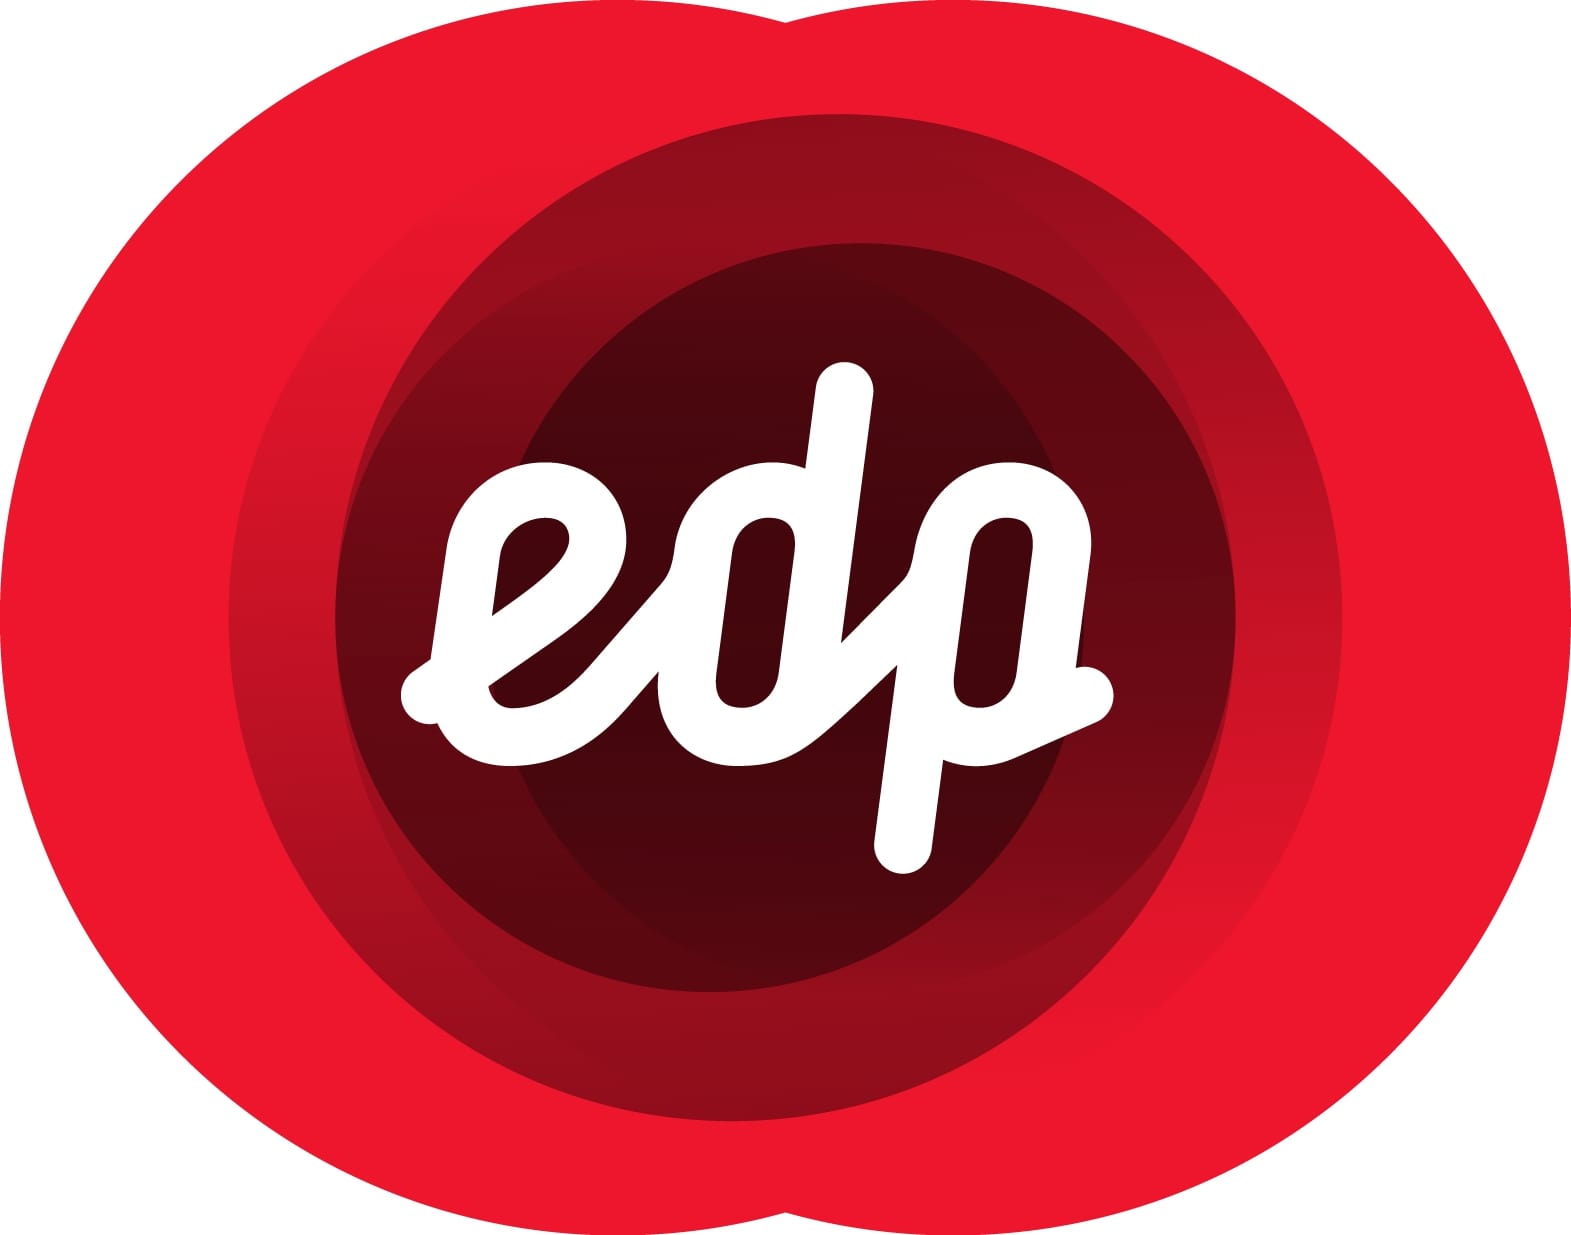 Logotipo EDP